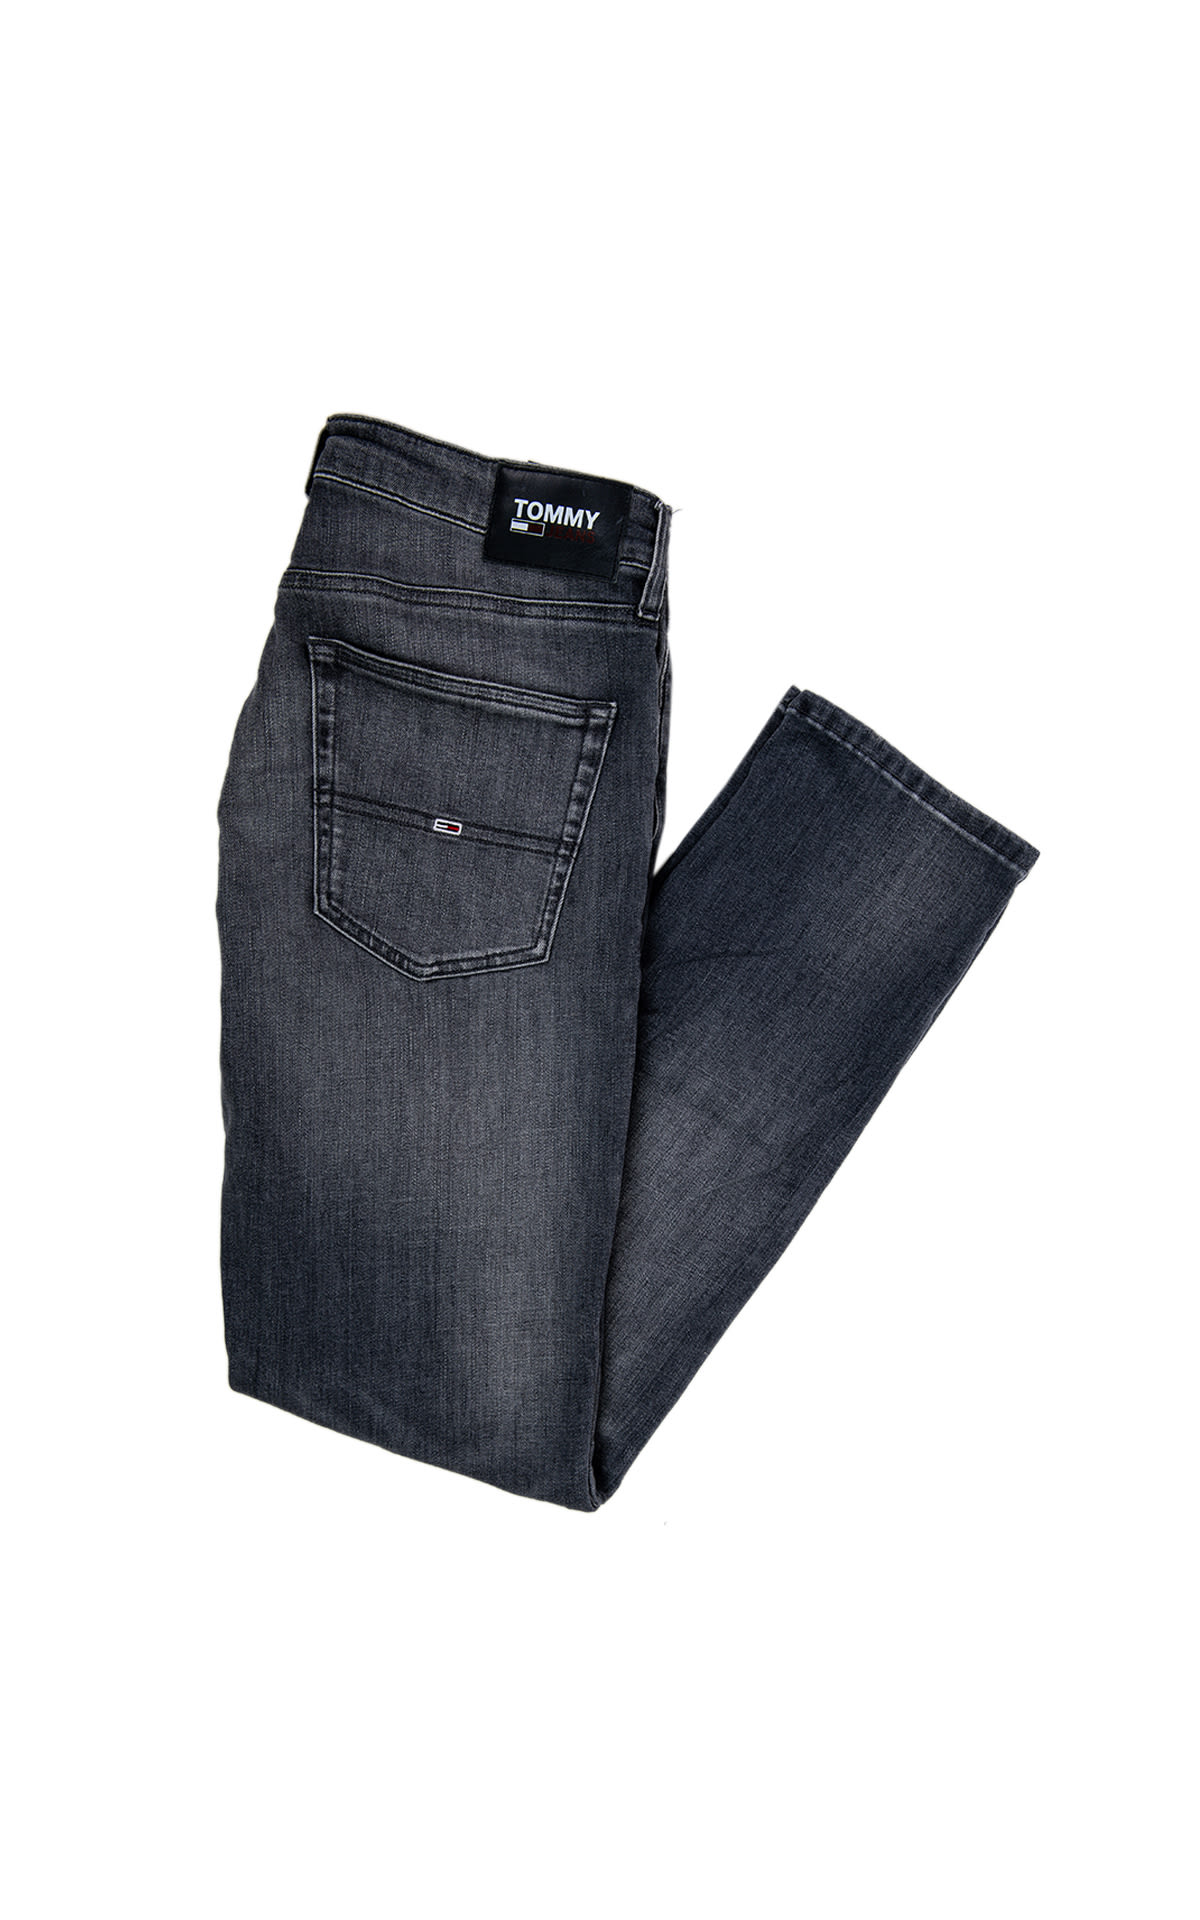 Tommy hilfiger jeans for men